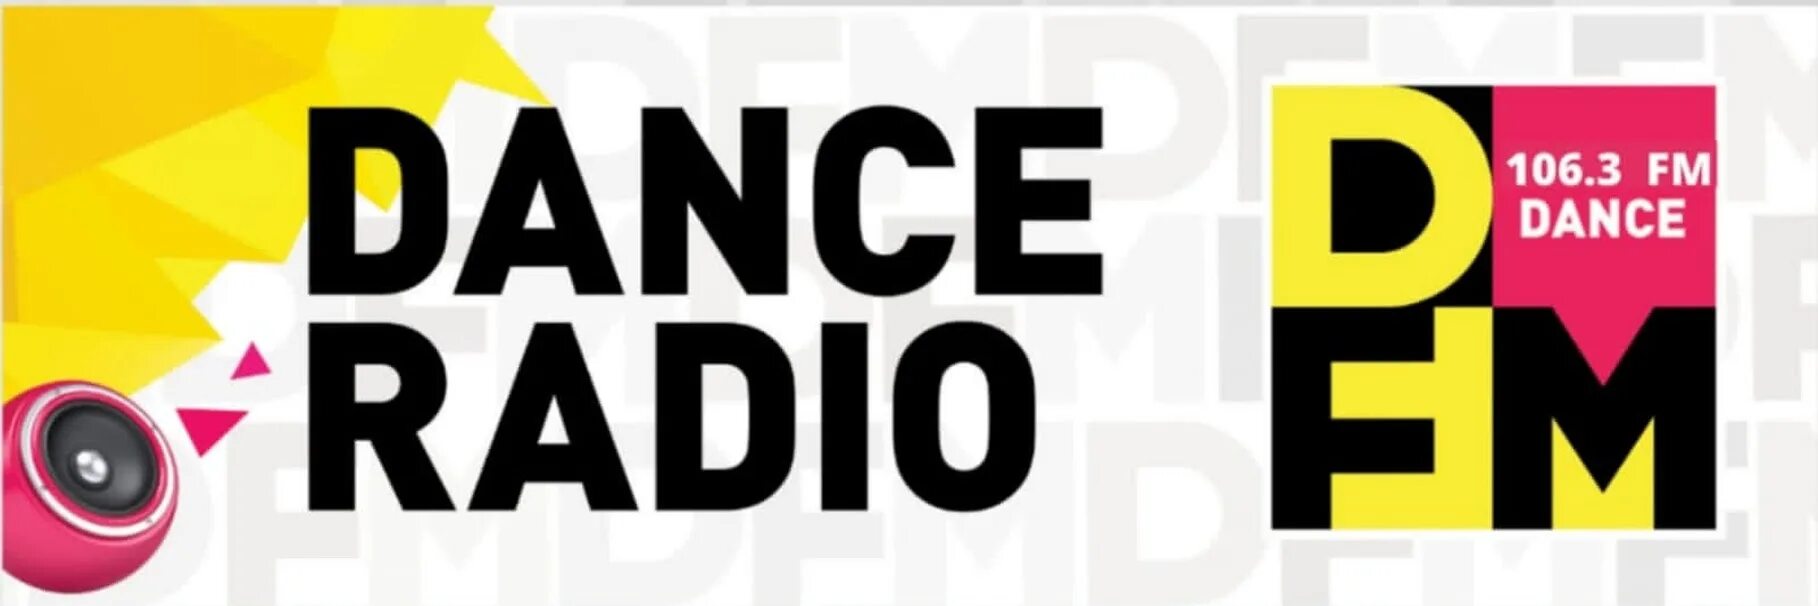 Сайт радиостанции DFM. DFM логотип. Логотипы радиостанций ди ФМ. DFM Dance Radio. Прямой эфир радио ди фм